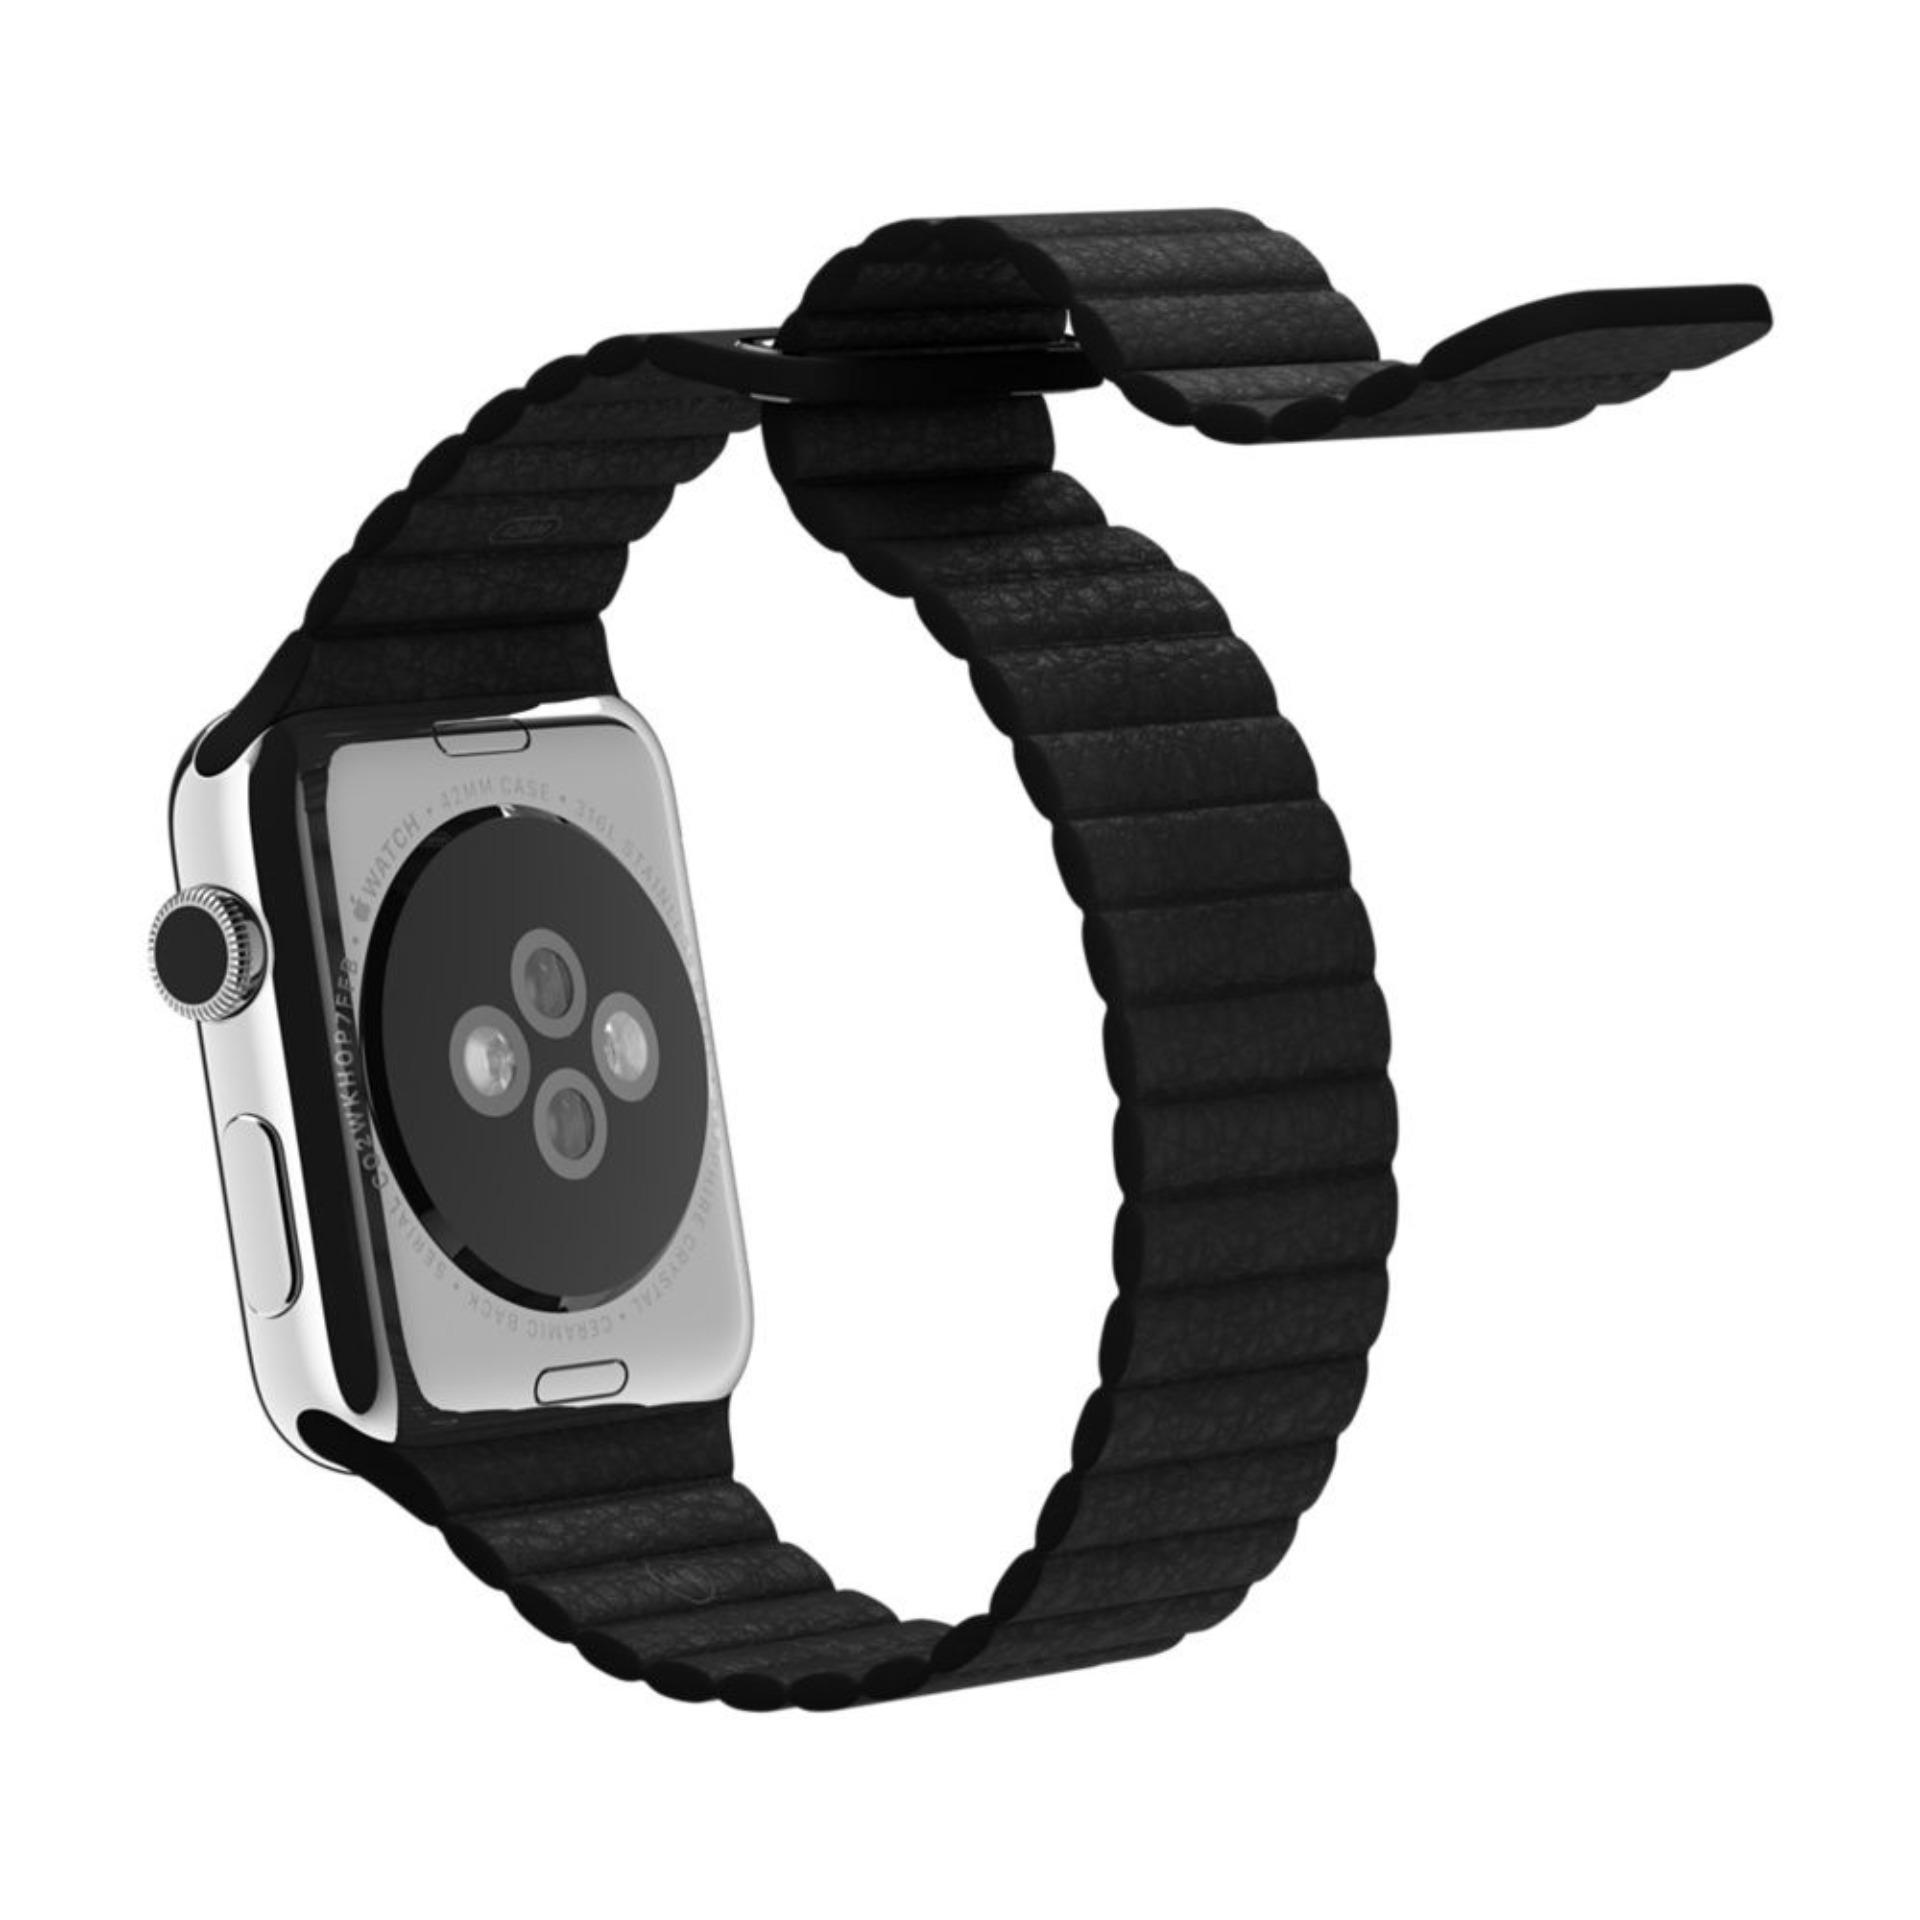 Apple Watch Band 38mm Magnetic Closure Series / Tali Jam Tangan Original - Hitam